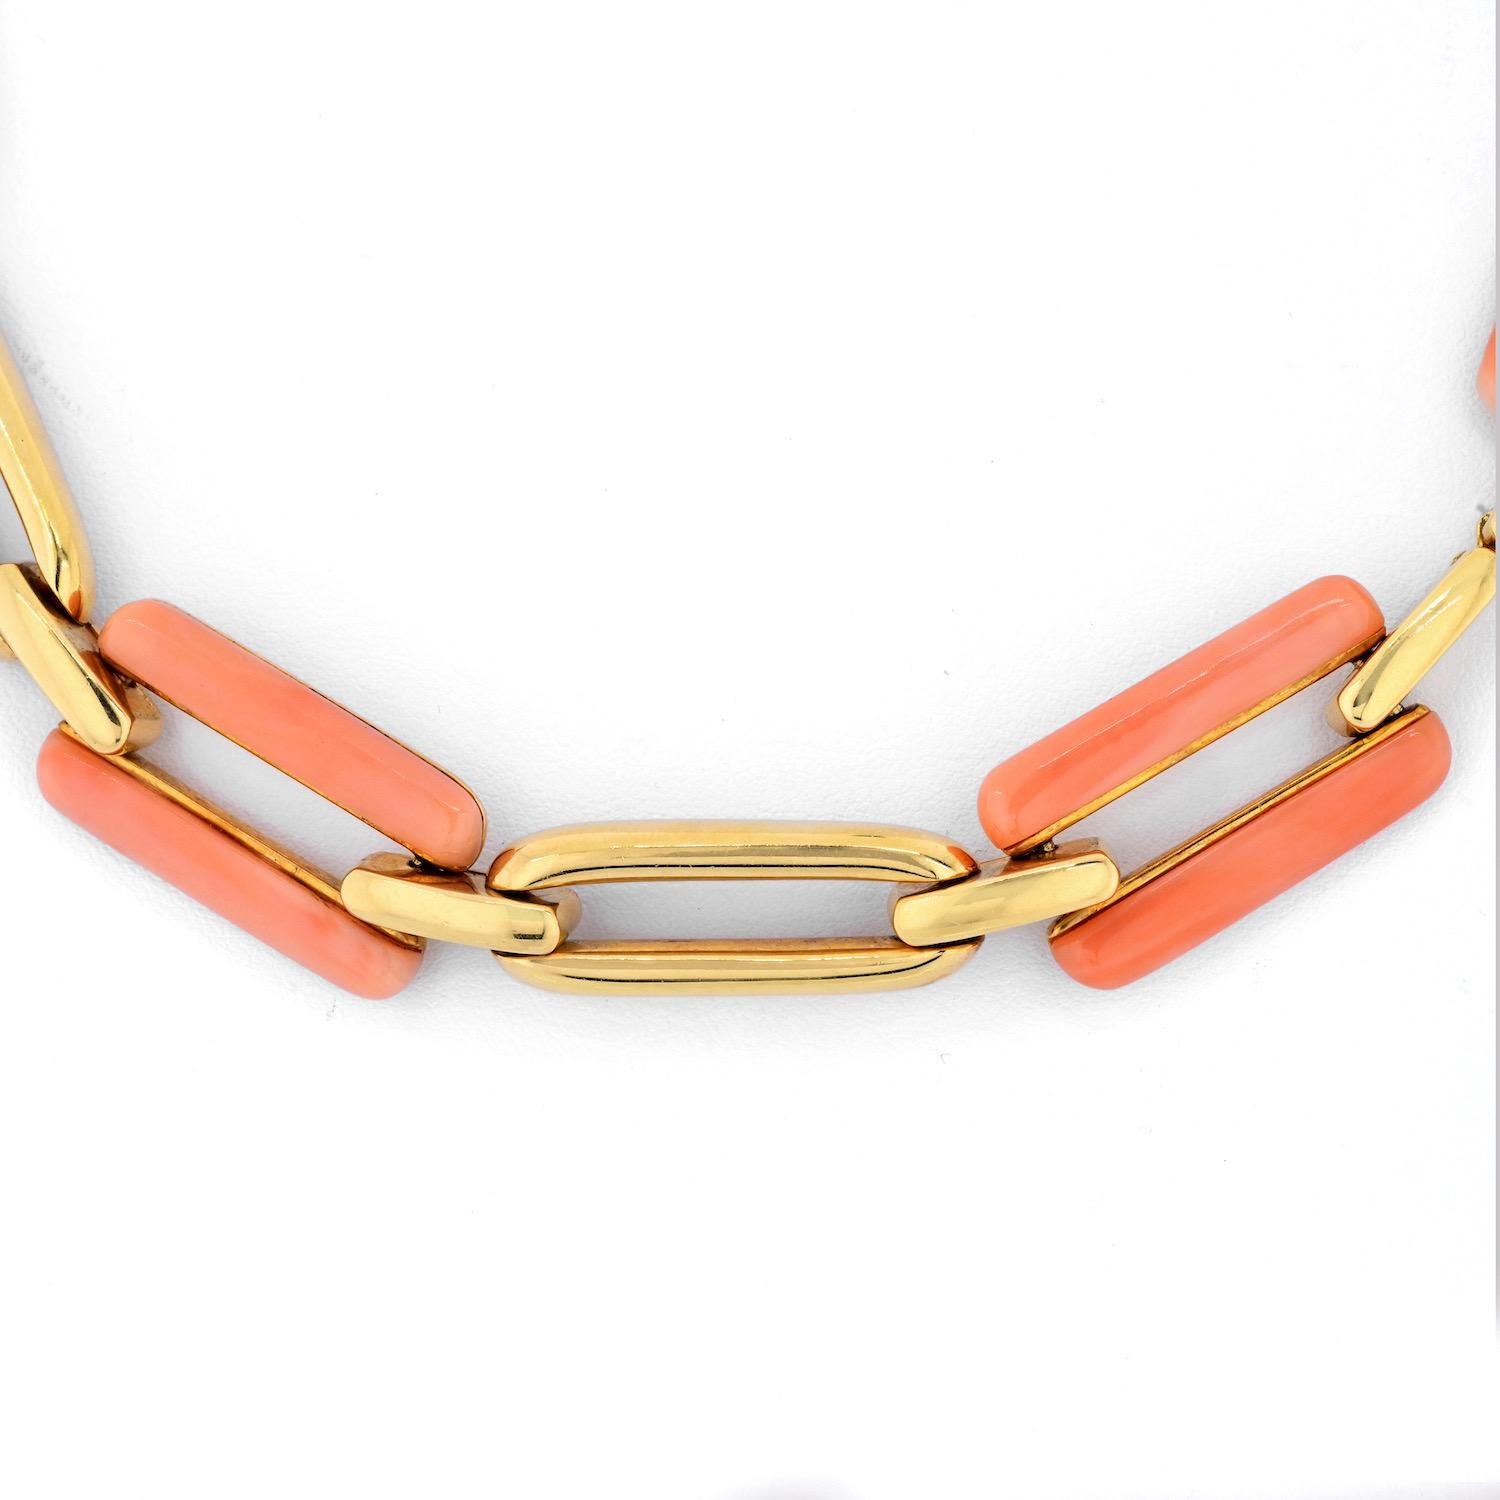 David Webb - Collier convertible en or jaune 18 carats avec corail rose et maillons en or.
Ce joli collier à maillons de 20 pouces de long sera un complément parfait à votre tenue d'été. Ce collier peut également être porté comme bracelet.
